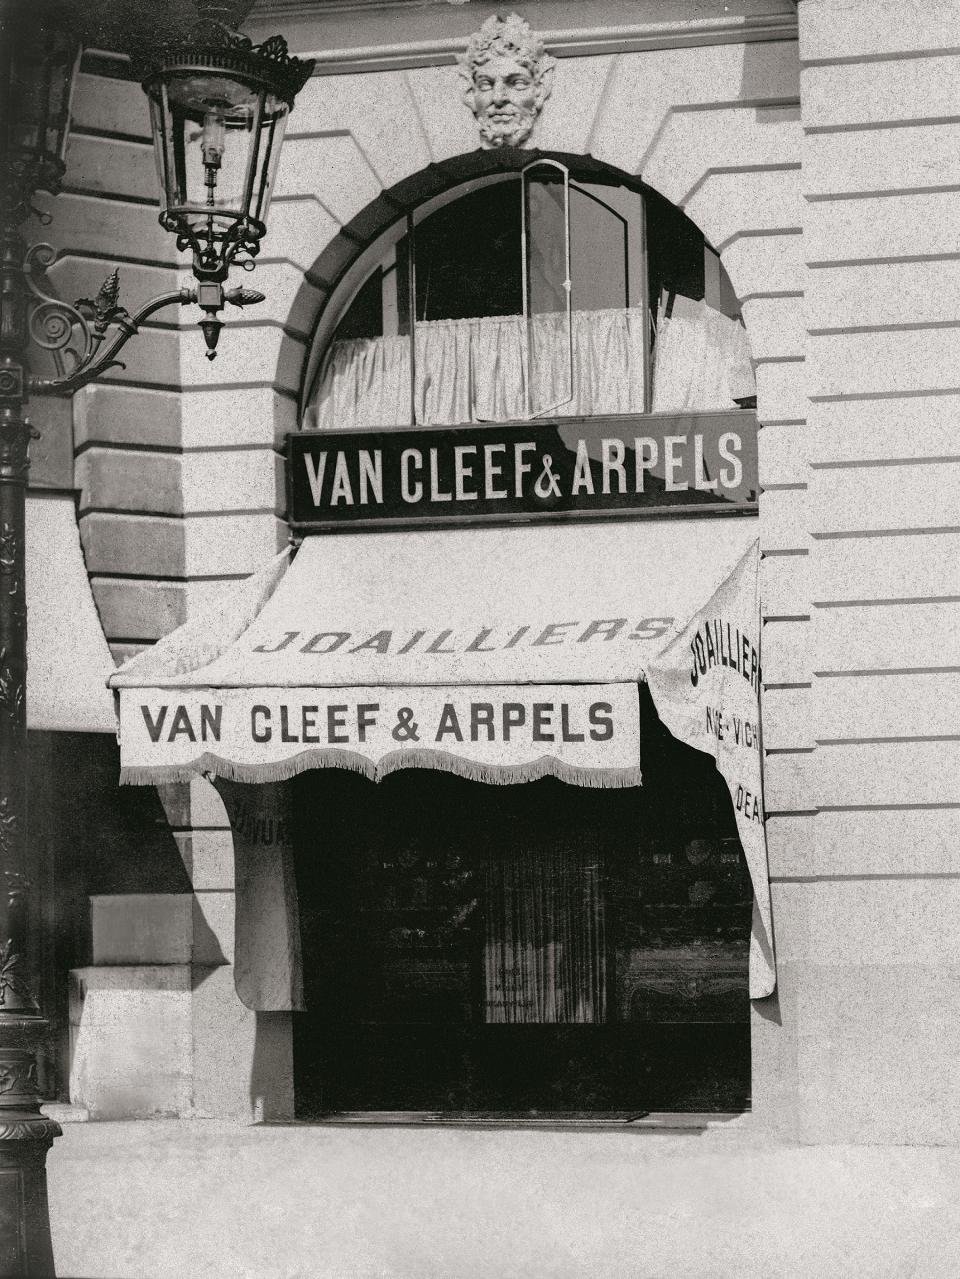 Van Cleef & Arpels 梵克雅寶精品店，約 1930 年 Van Cleef & Arpels Archives